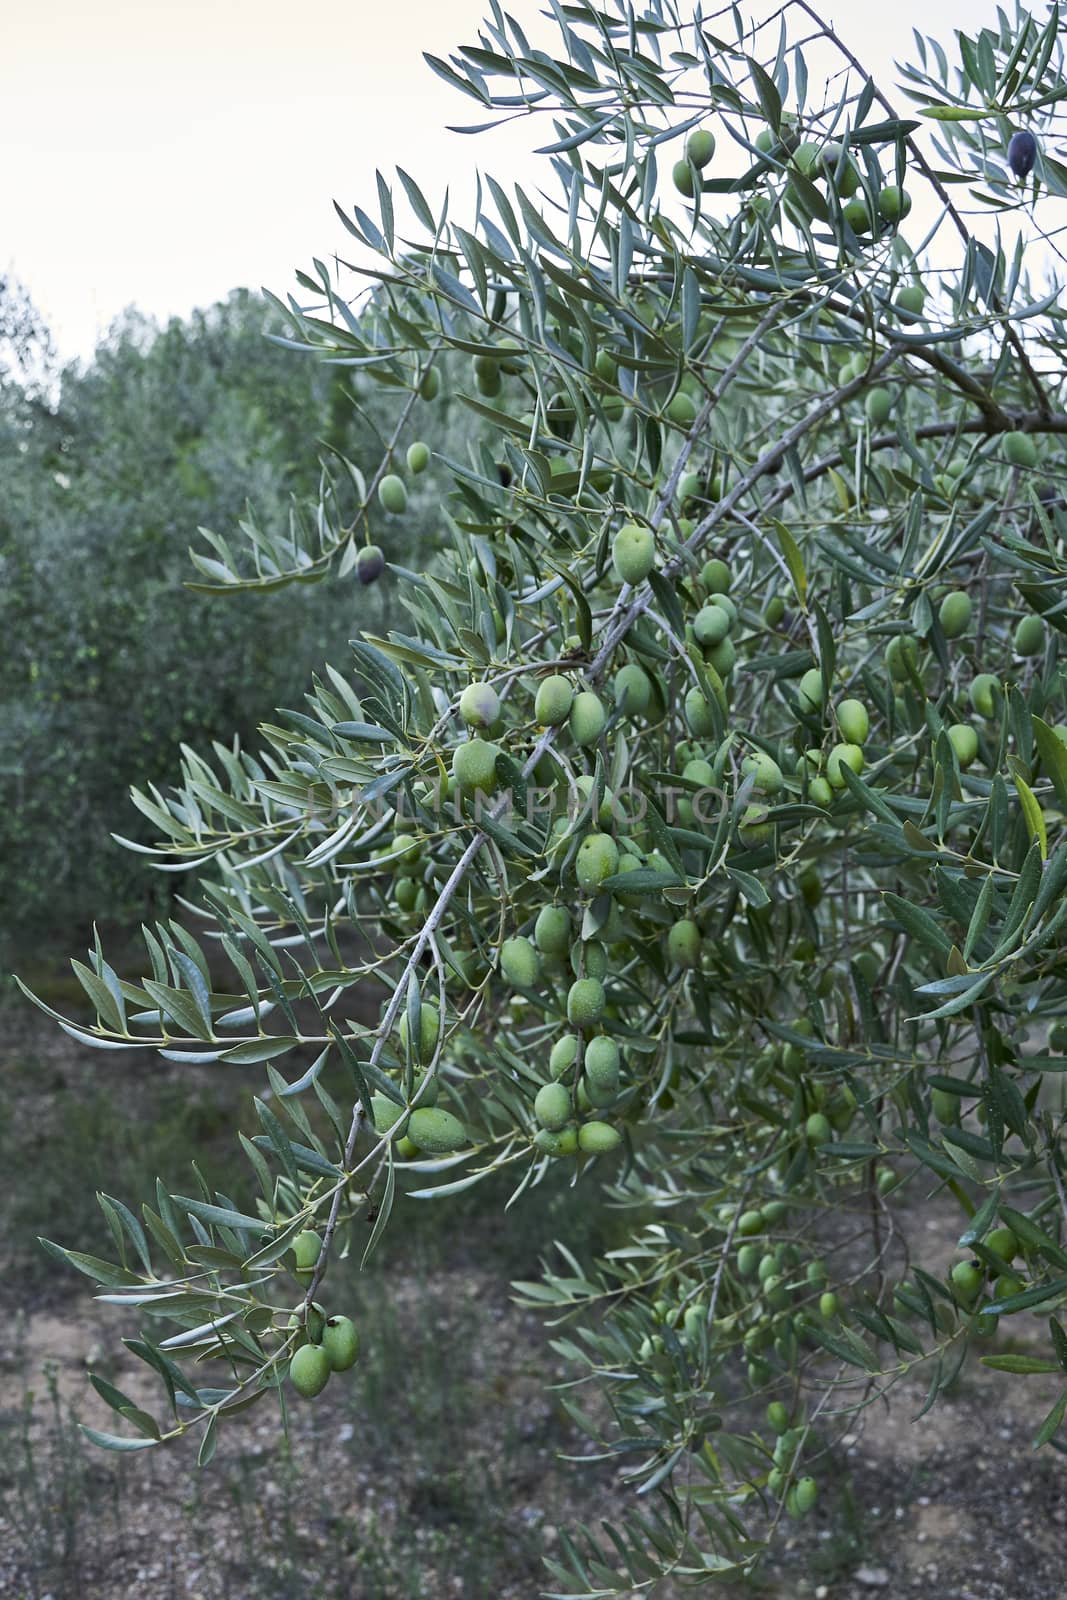 Olive groves full of olives for harvest by raul_ruiz